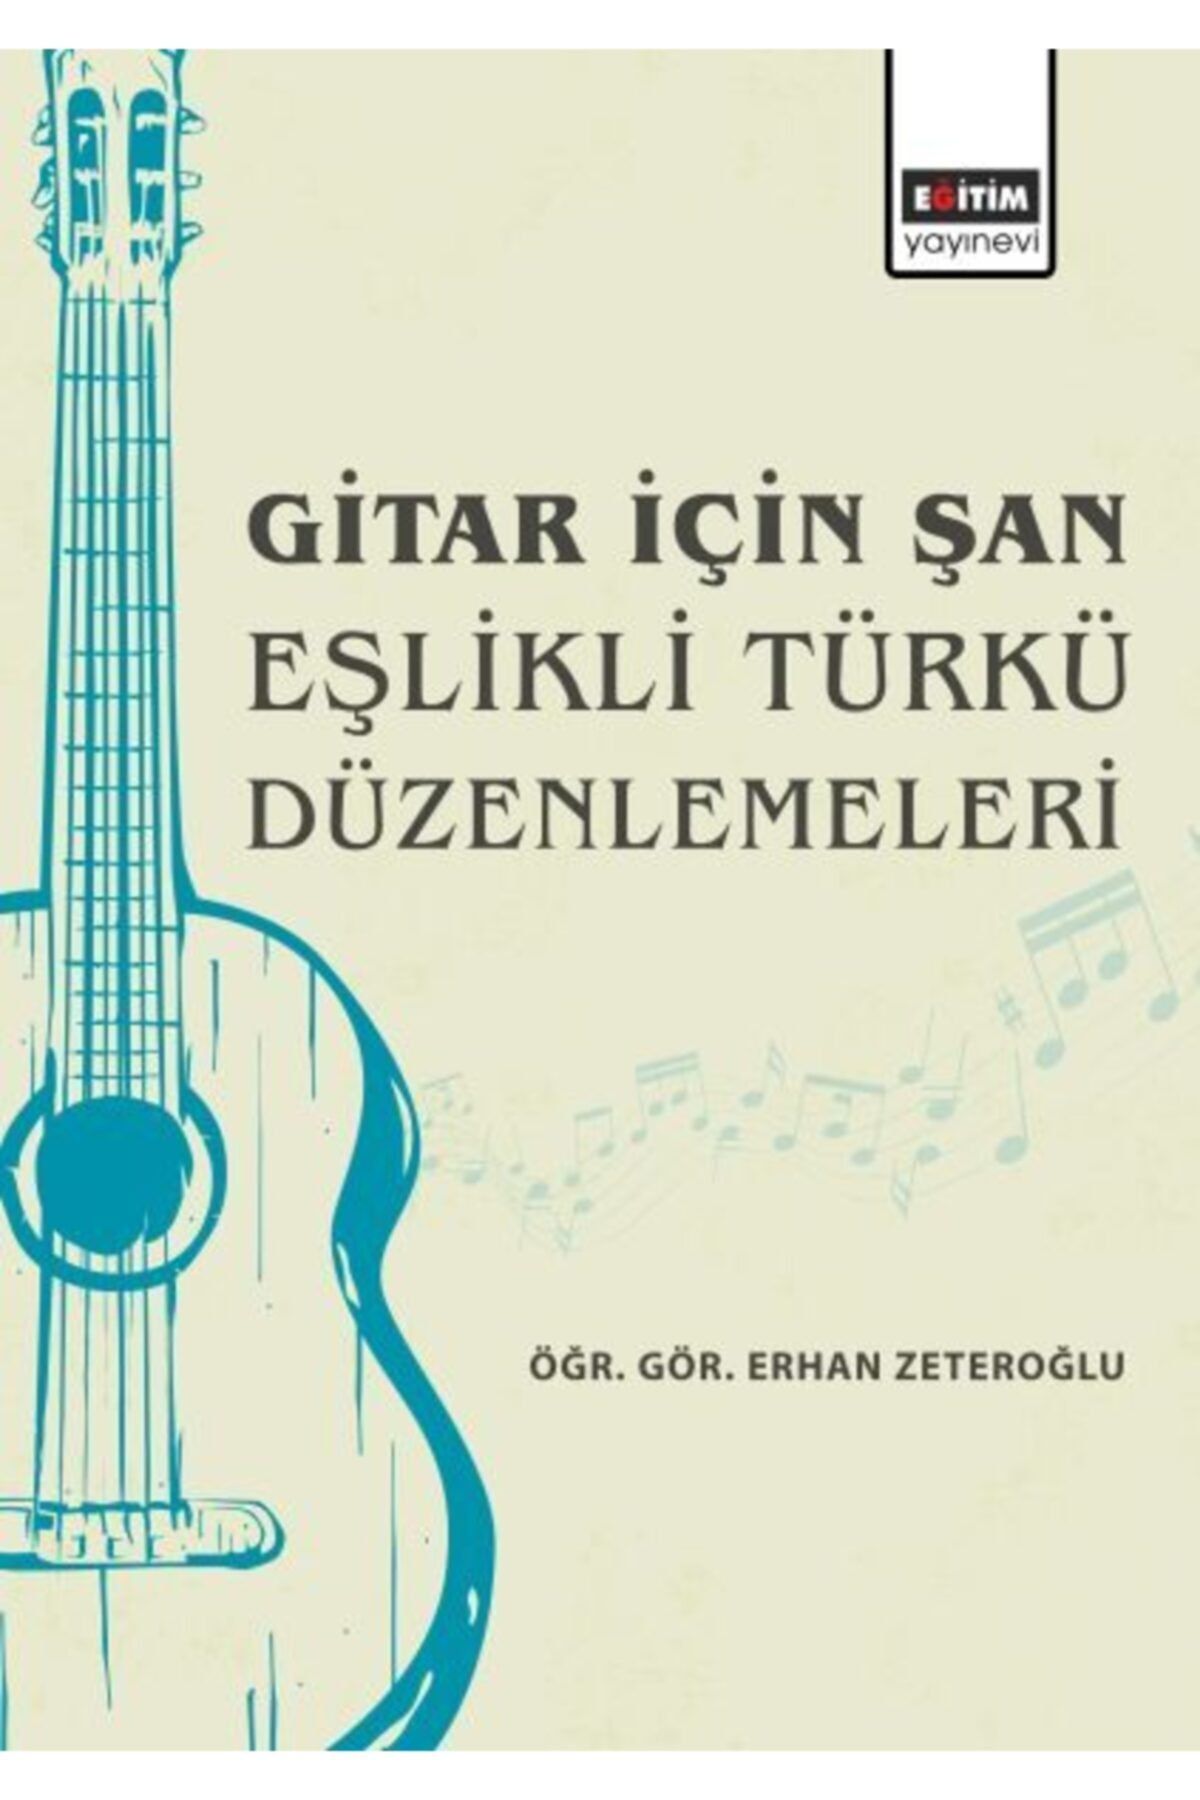 Eğitim Yayınevi Gitar İçin Şan Eşlikli Türkü Düzenlemeleri